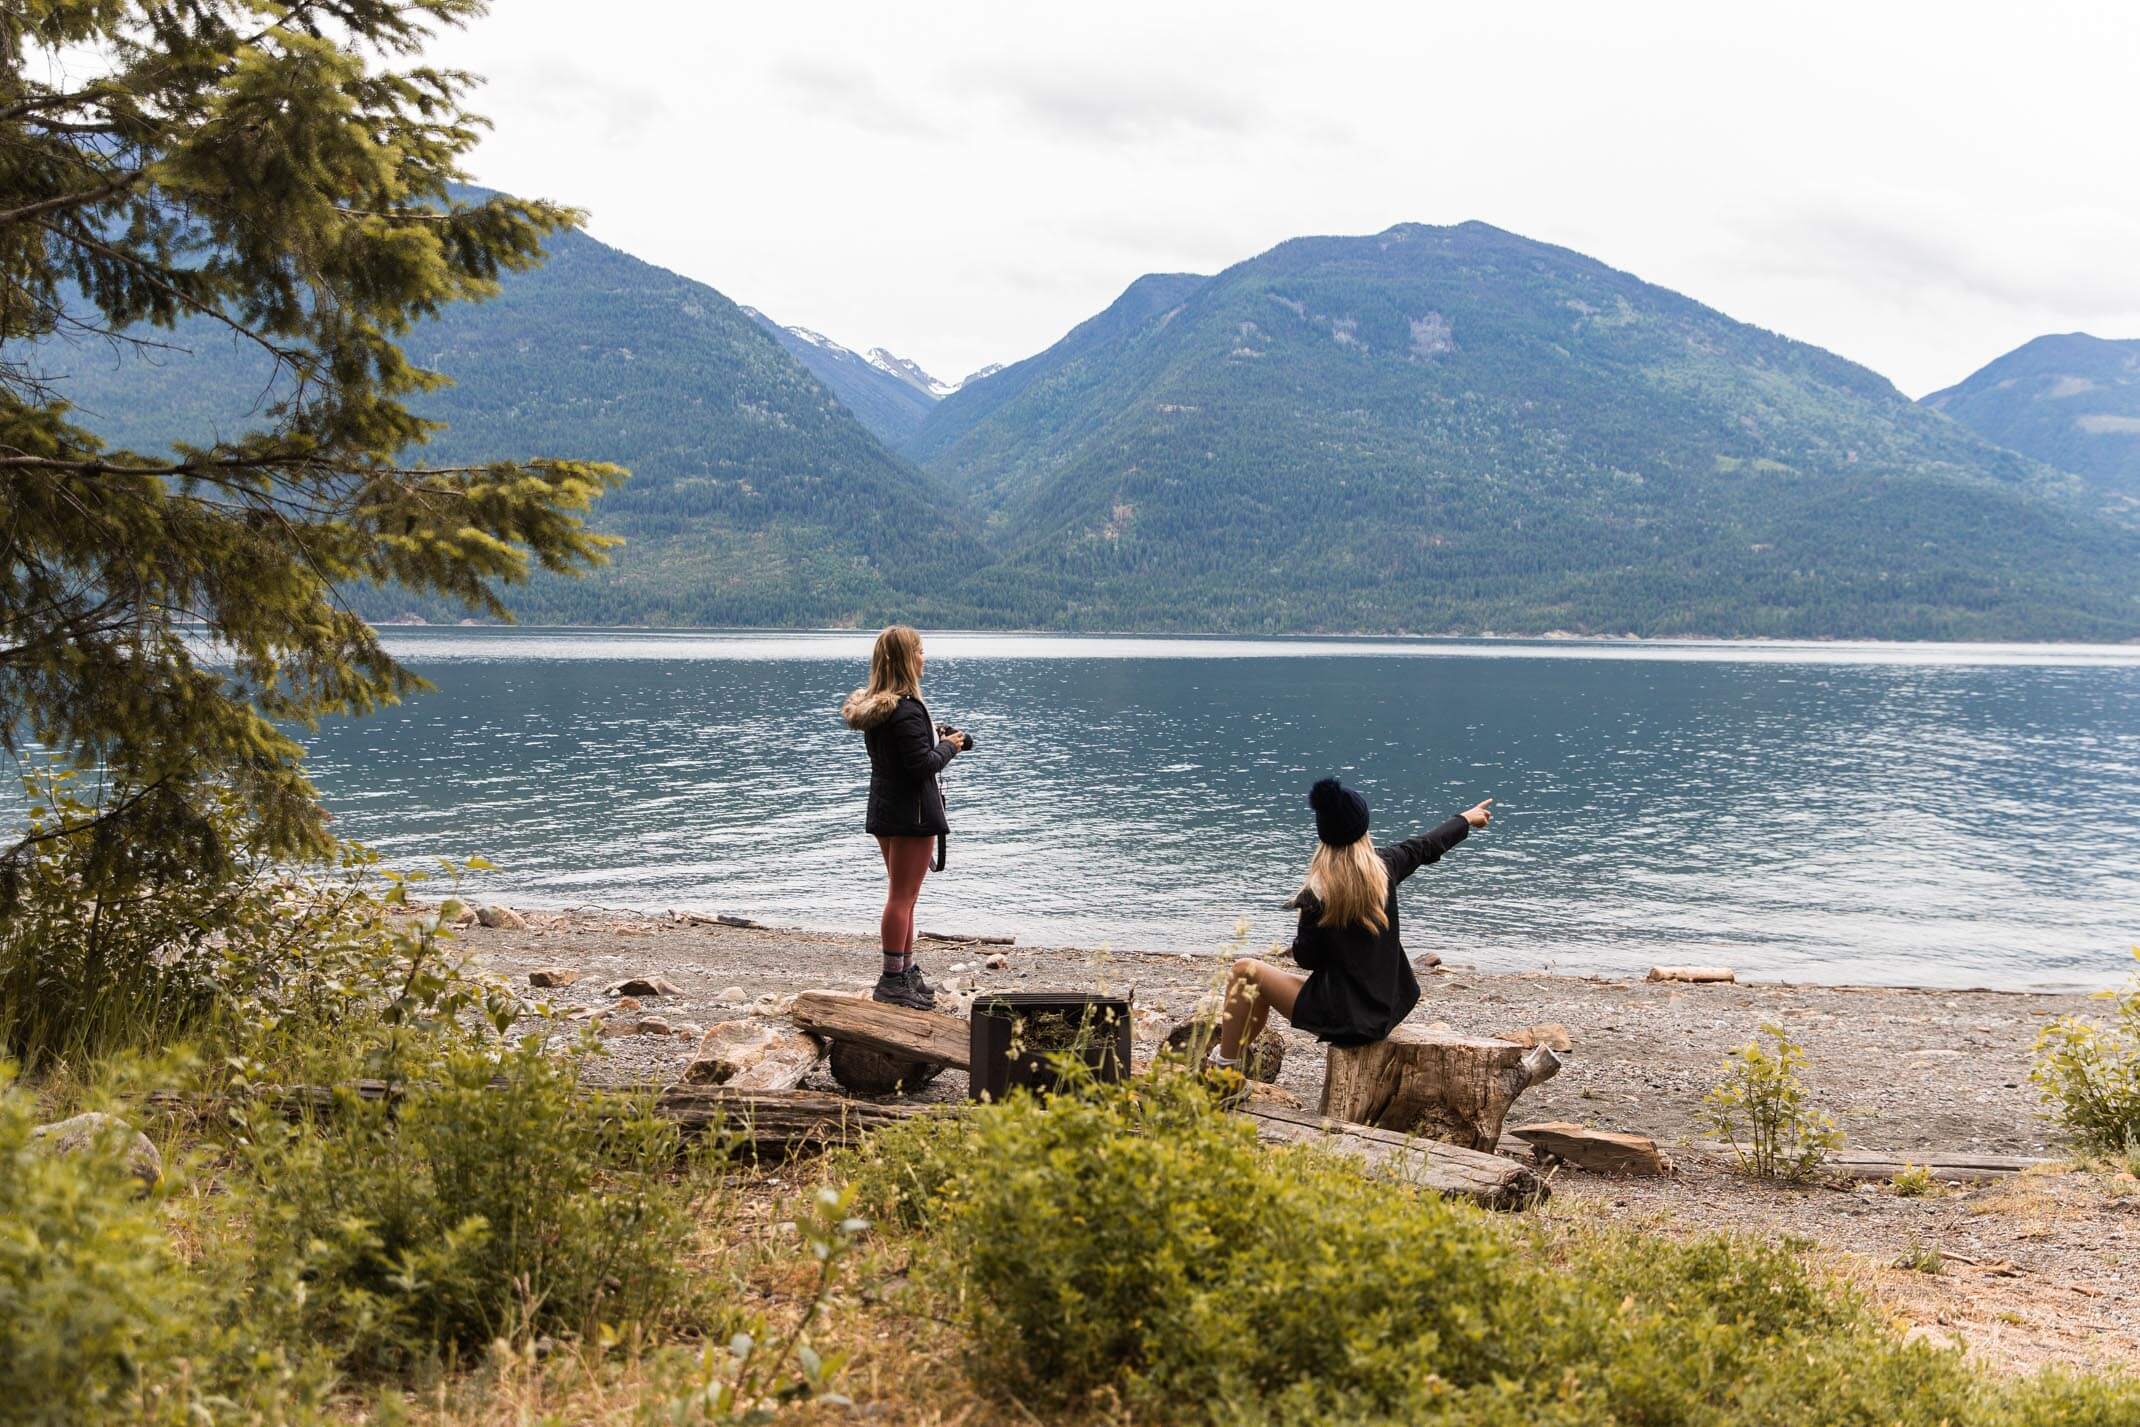 10 photos that will make you want to visit Kootenay Rockies, British Columbia